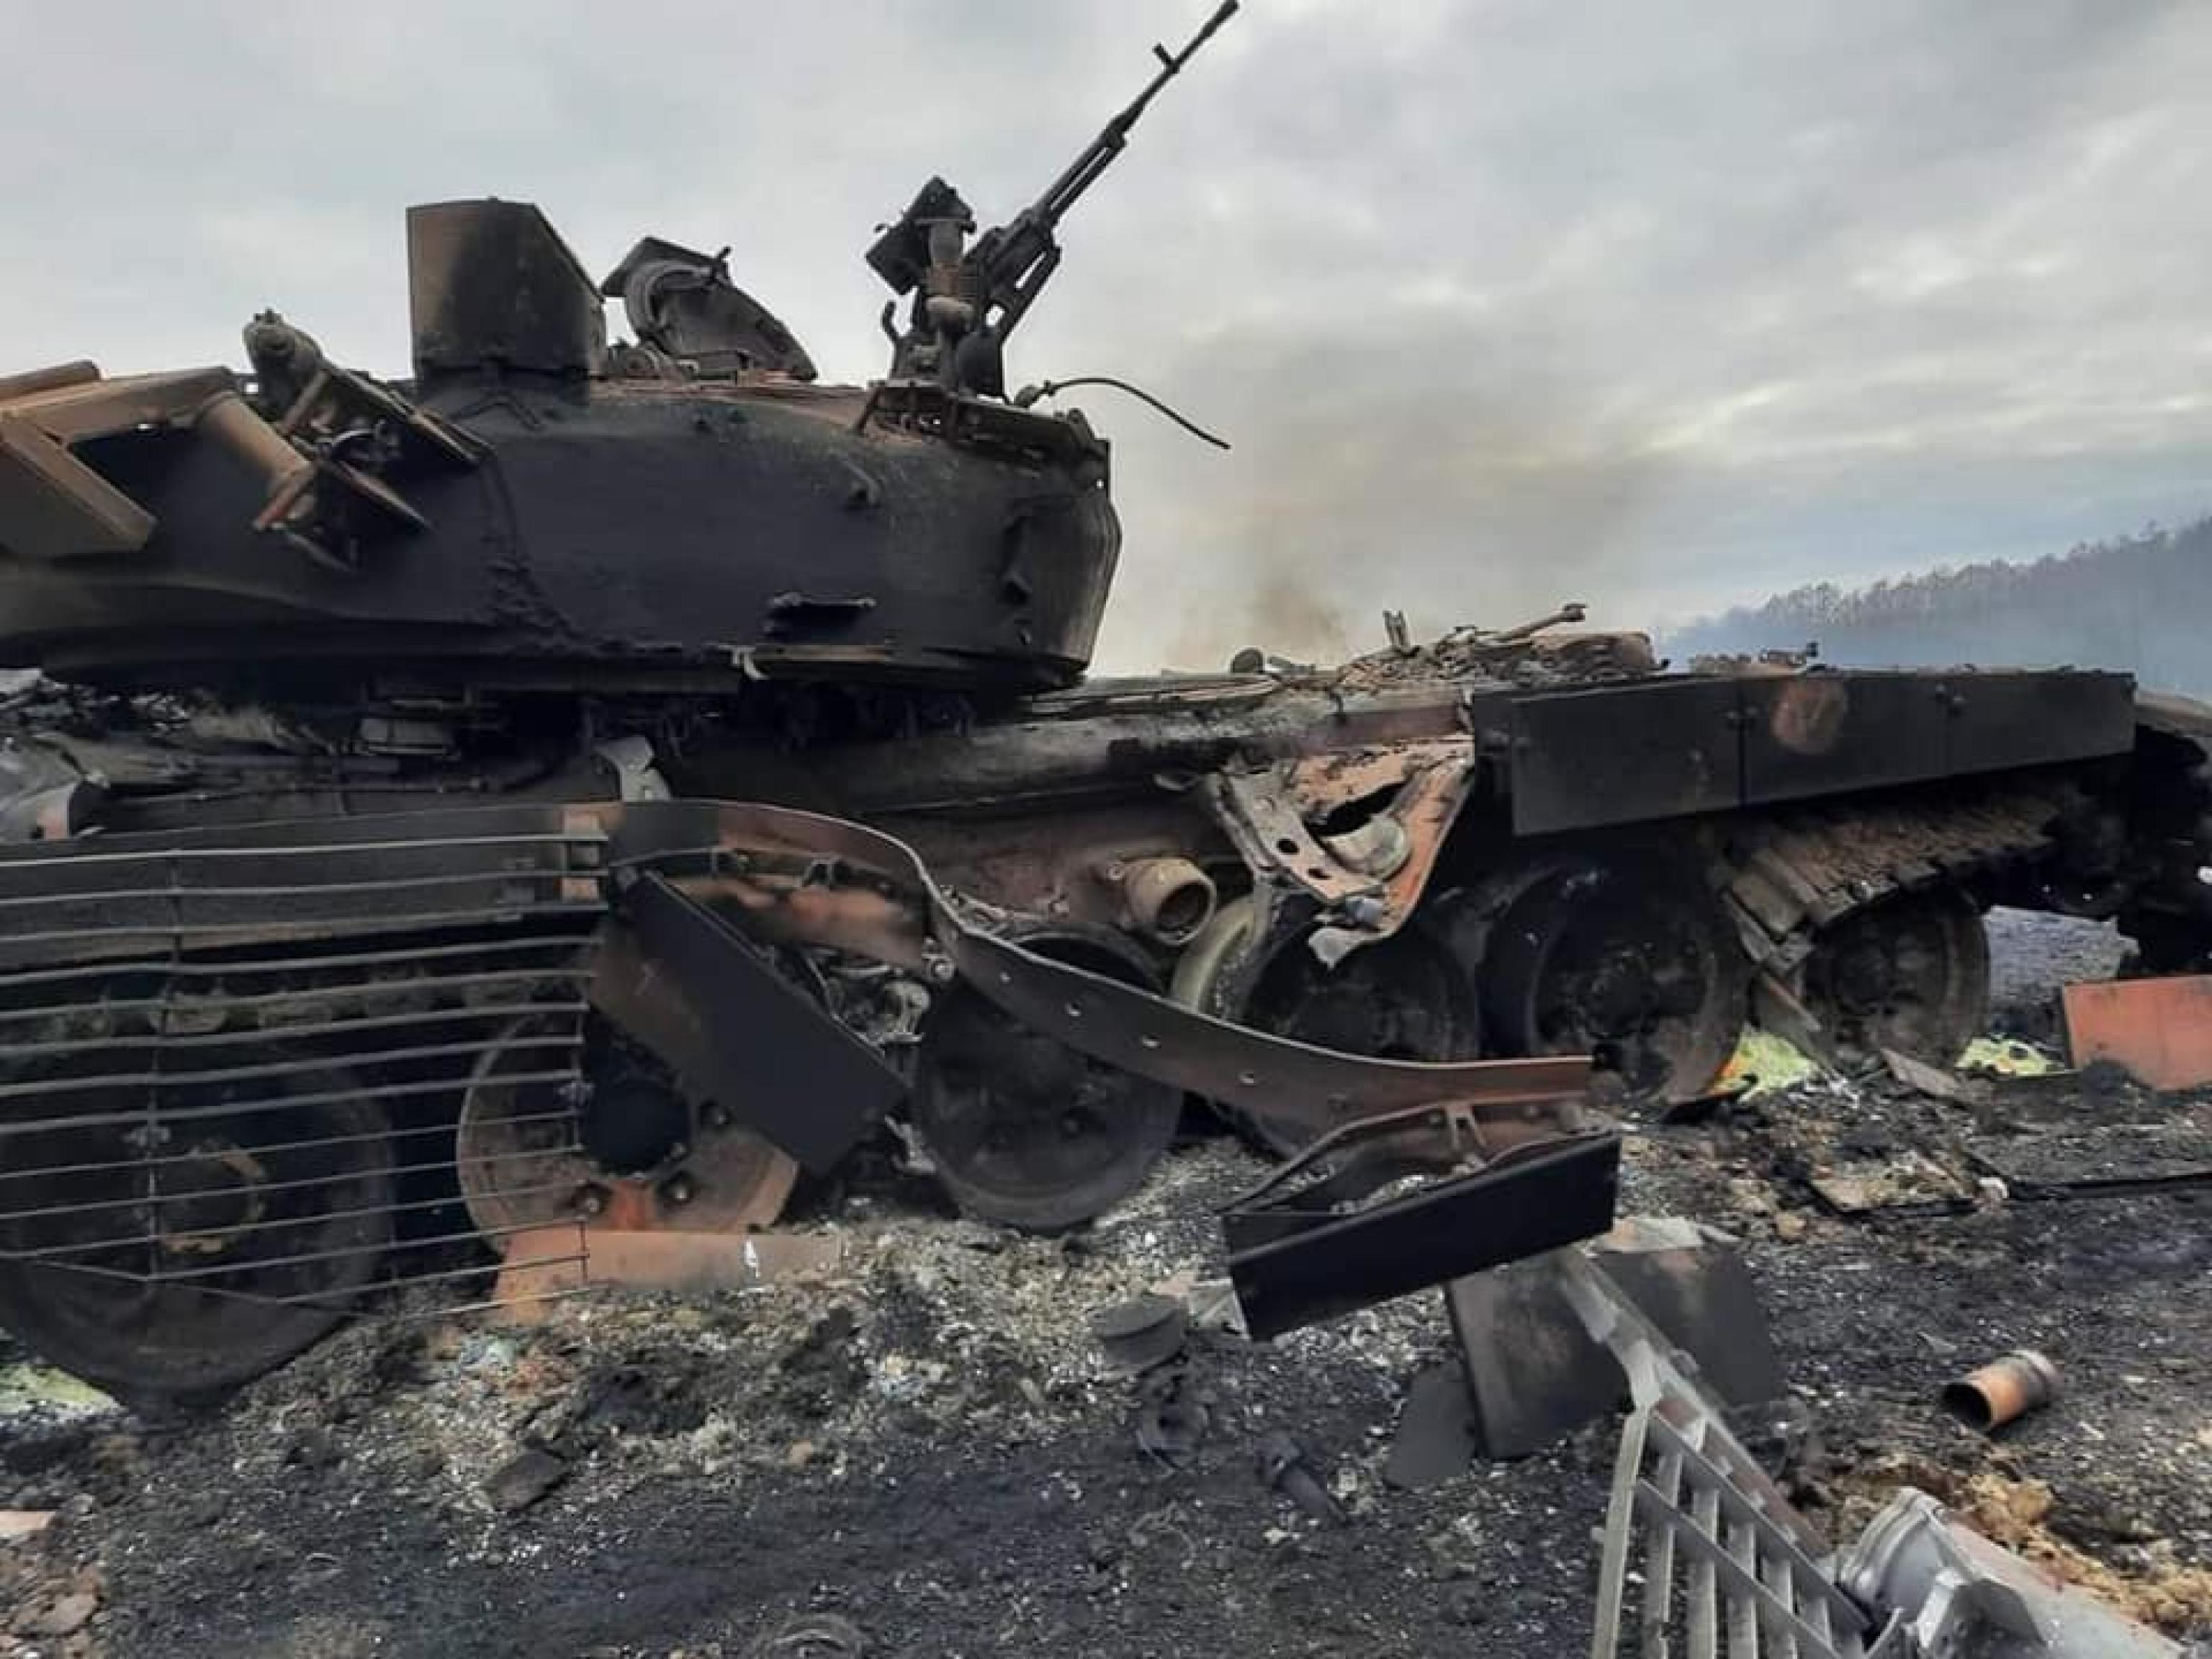 Guerra in Ucraina: uccisi 352 civili, tra cui 14 bambini. Ansia per 100 italiani bloccati a Kiev - Giornale di Sicilia